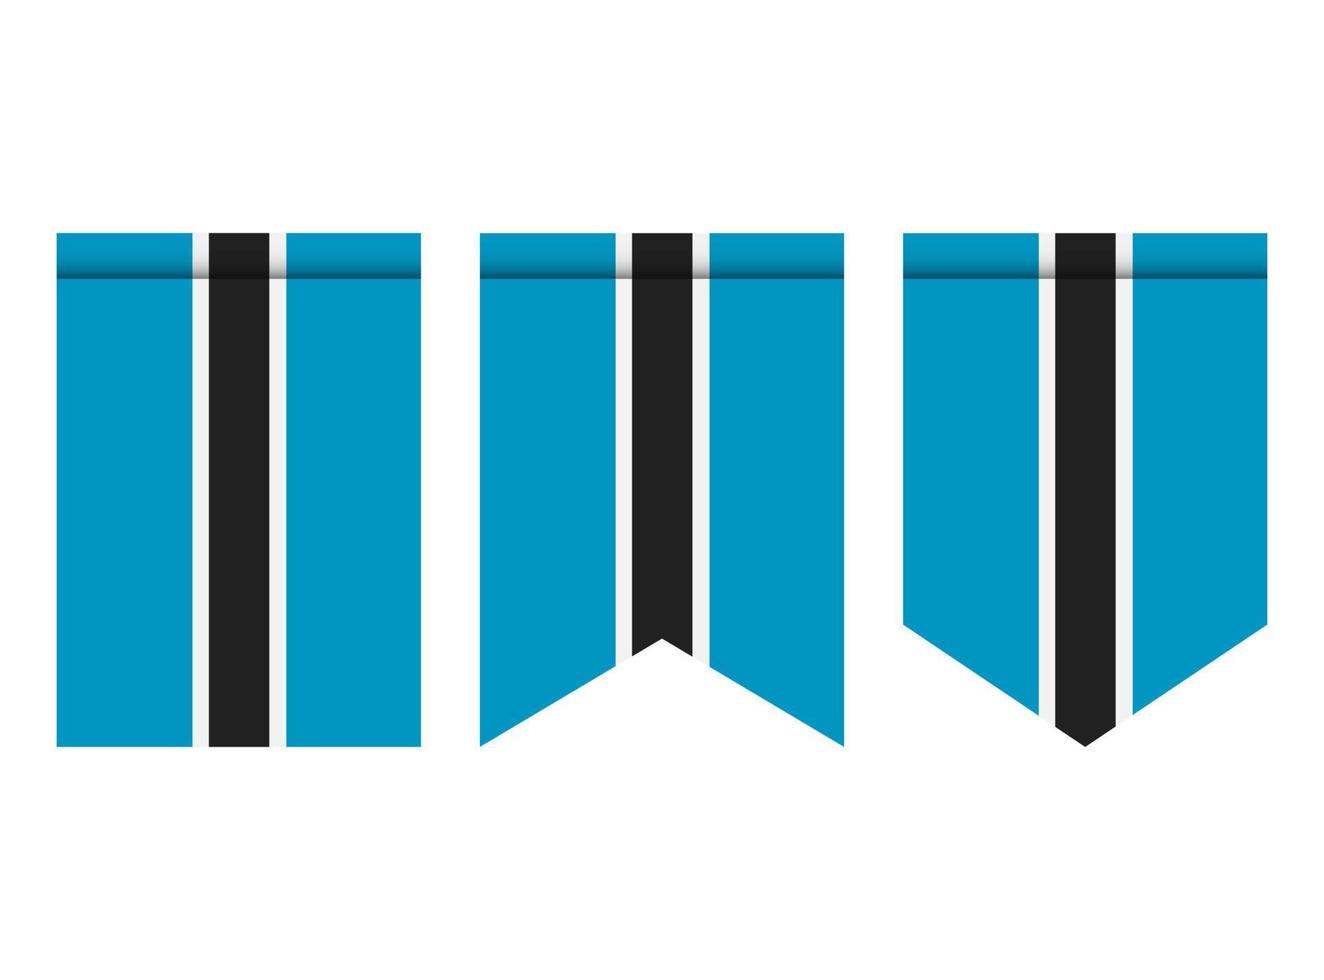 Botswana-Flagge oder Wimpel isoliert auf weißem Hintergrund. Wimpel Flaggensymbol. vektor